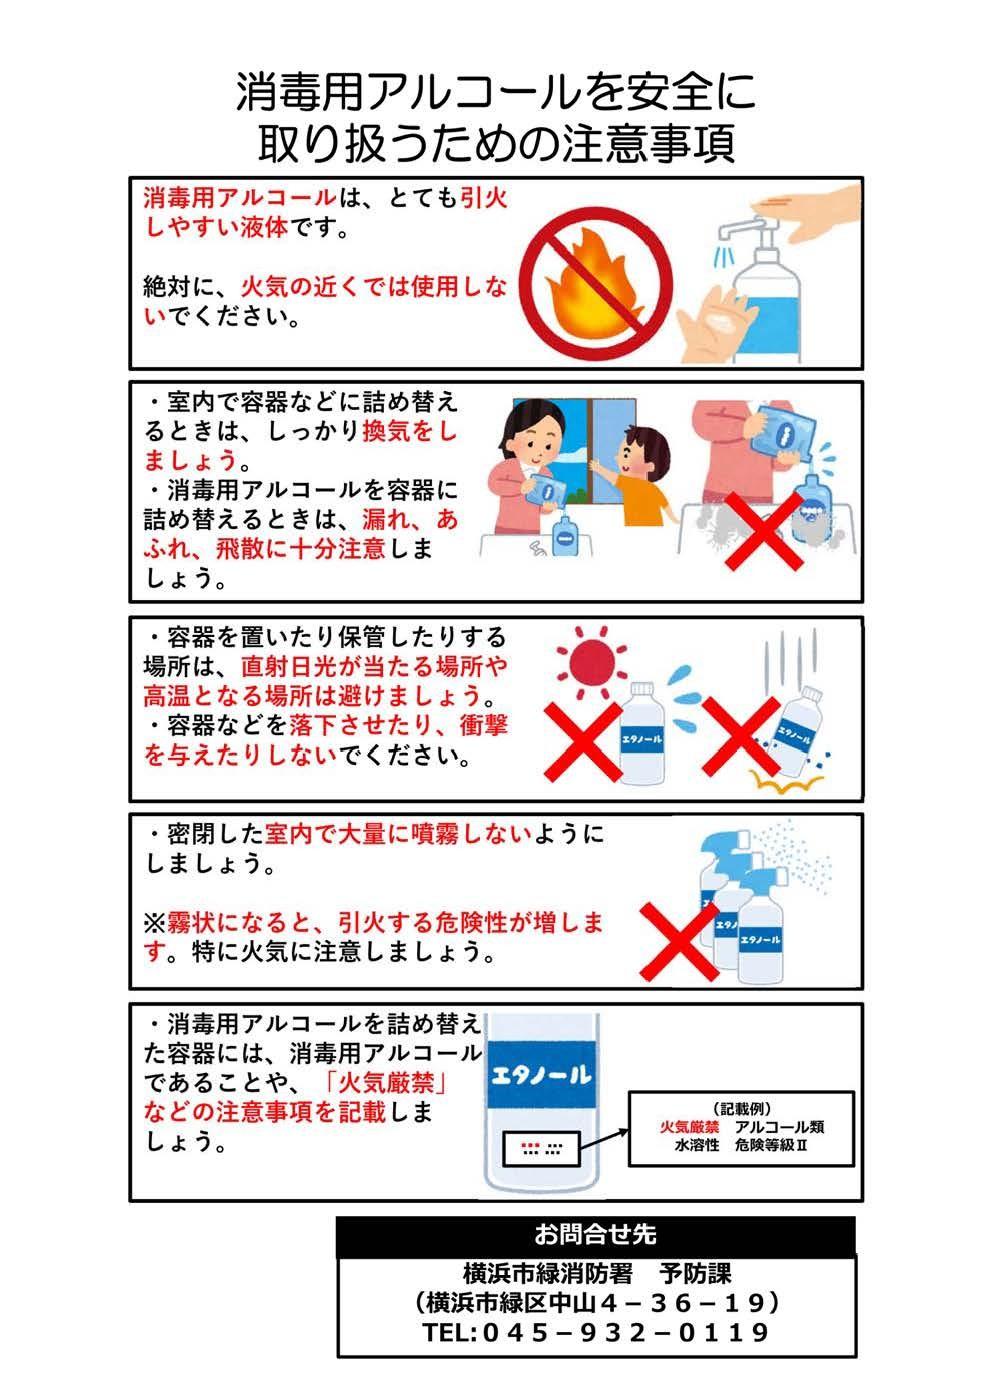 Poster với các biện pháp phòng ngừa để xử lý cồn tẩy rửa an toàn